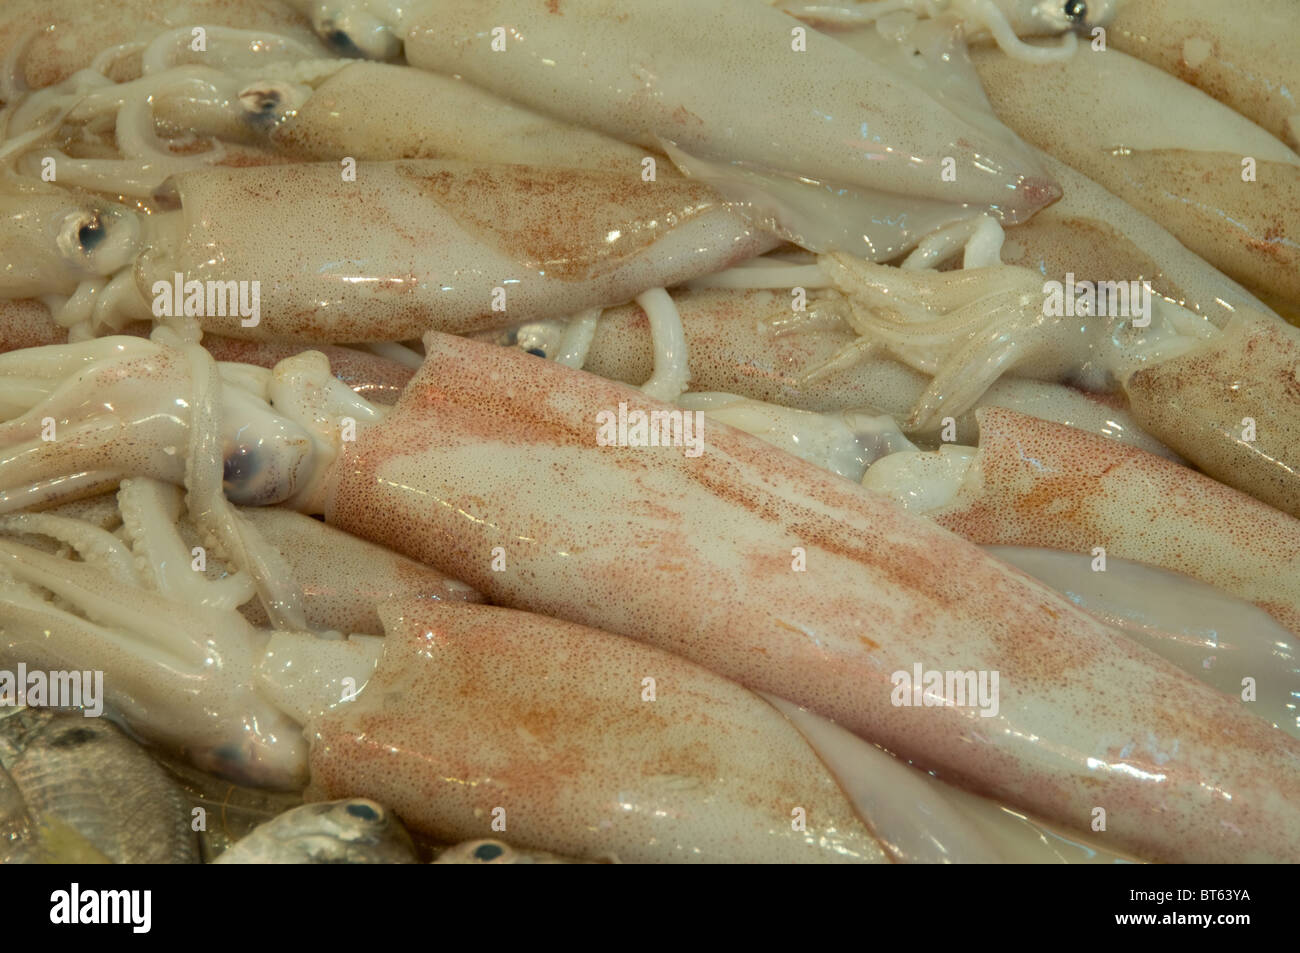 Marine Kopffüsser Tintenfisch essen produzieren marine nassen Diät Diät Markt Essen essbare frische Stockfoto